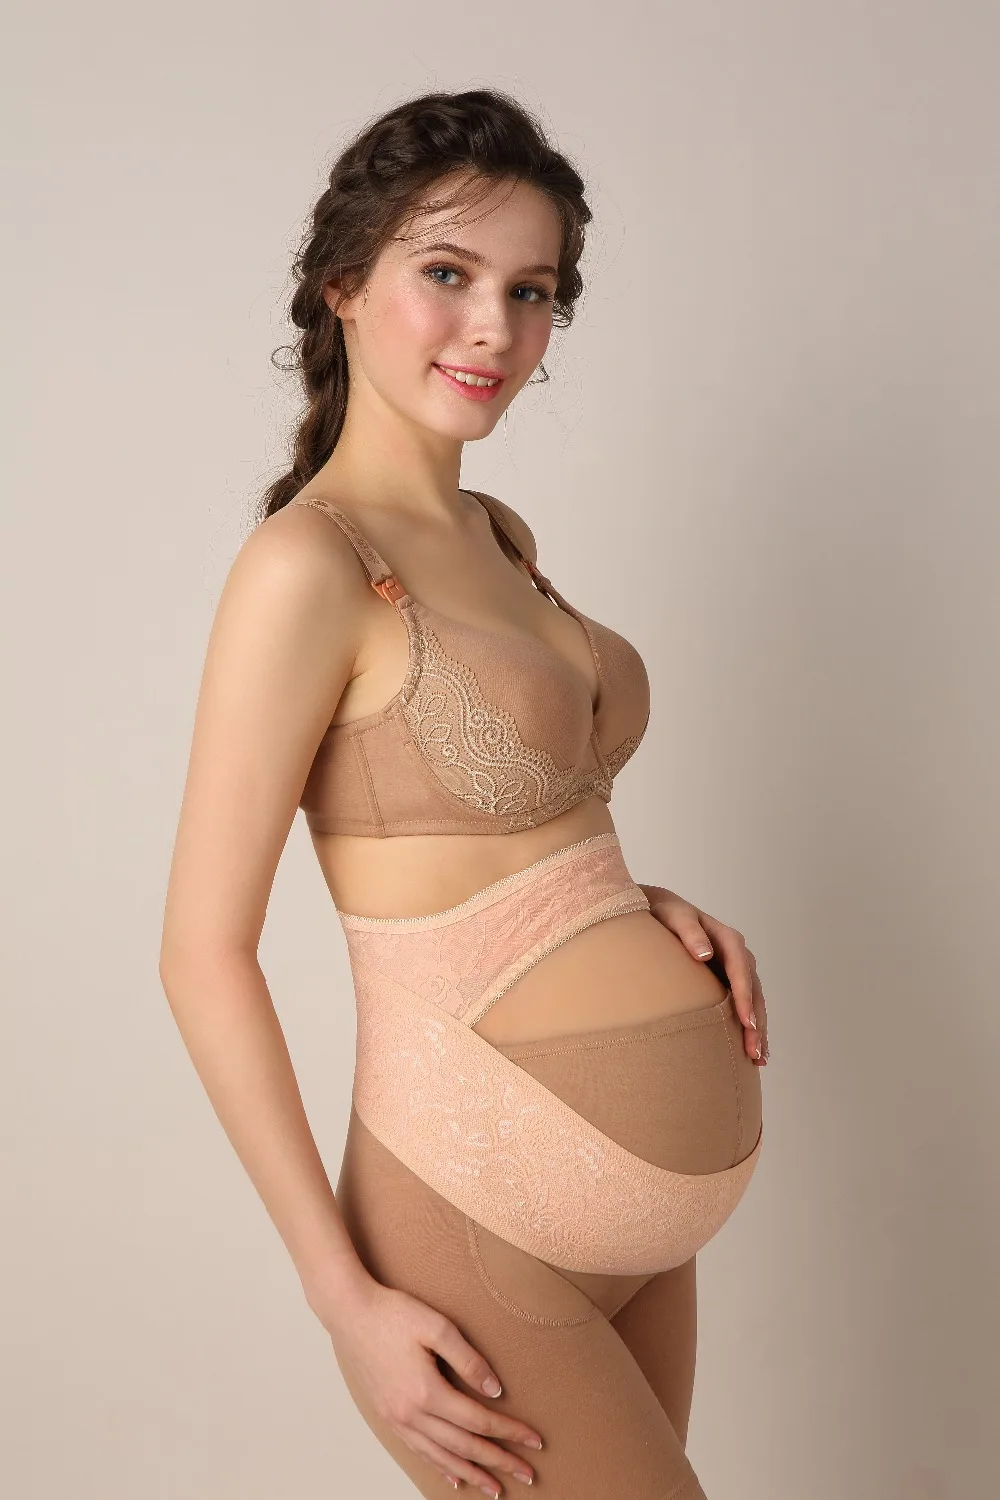 ZTOV бандаж для беременных Беременность дородовой поддерживающий бандаж для живота Пояс для поддержки спины бандаж для беременных Для